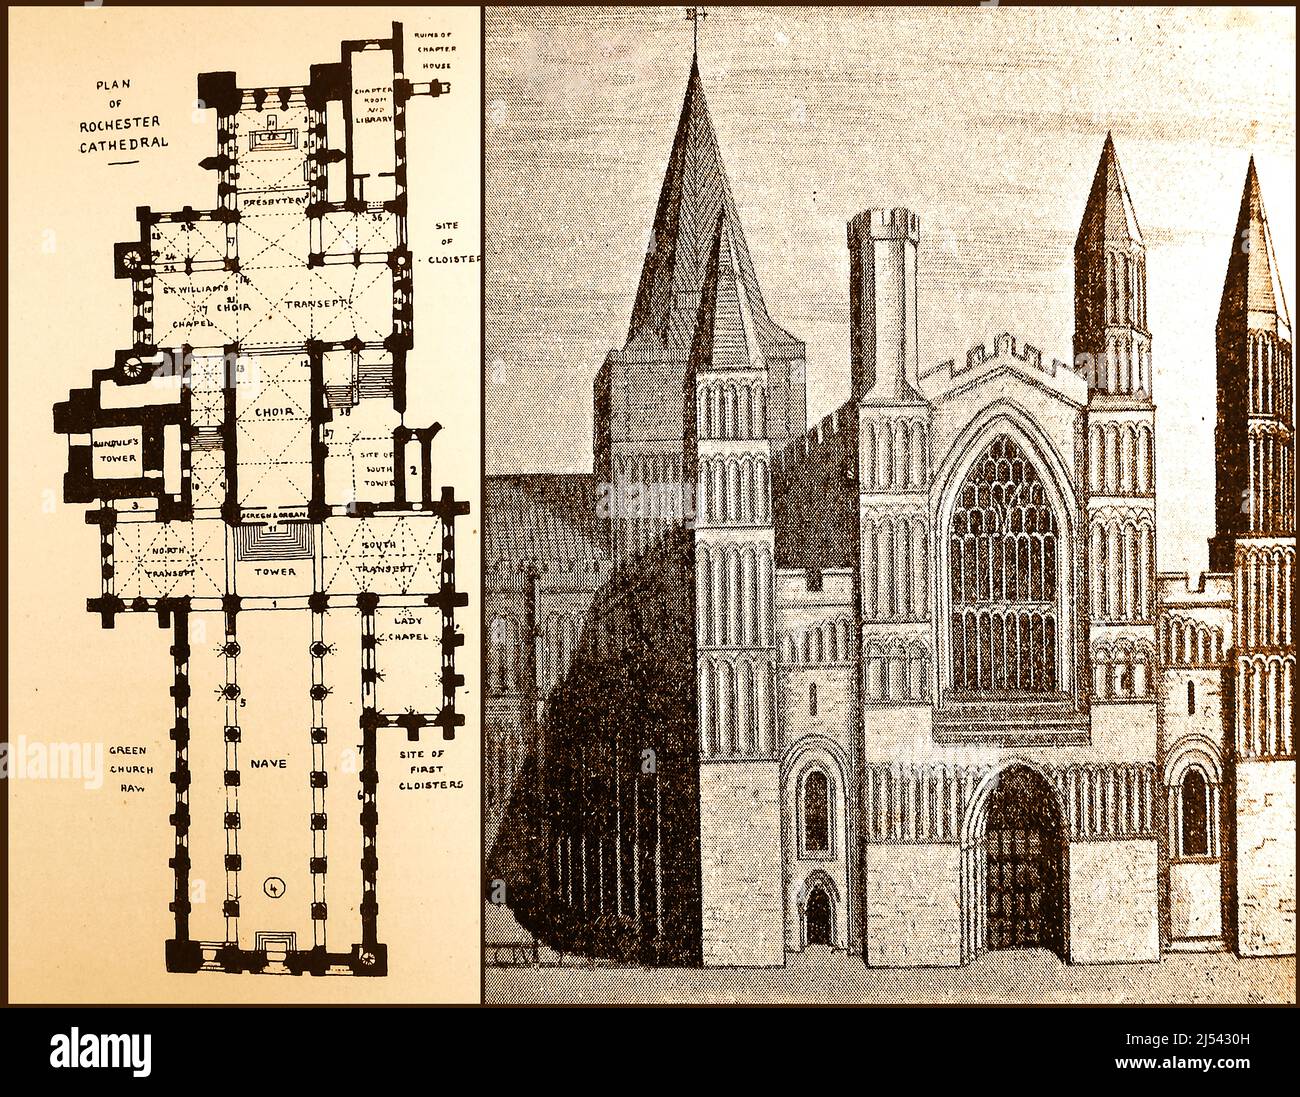 Rochester Cathedral, Großbritannien - ein früher Plan und eine Skizze der Kirche. Stockfoto